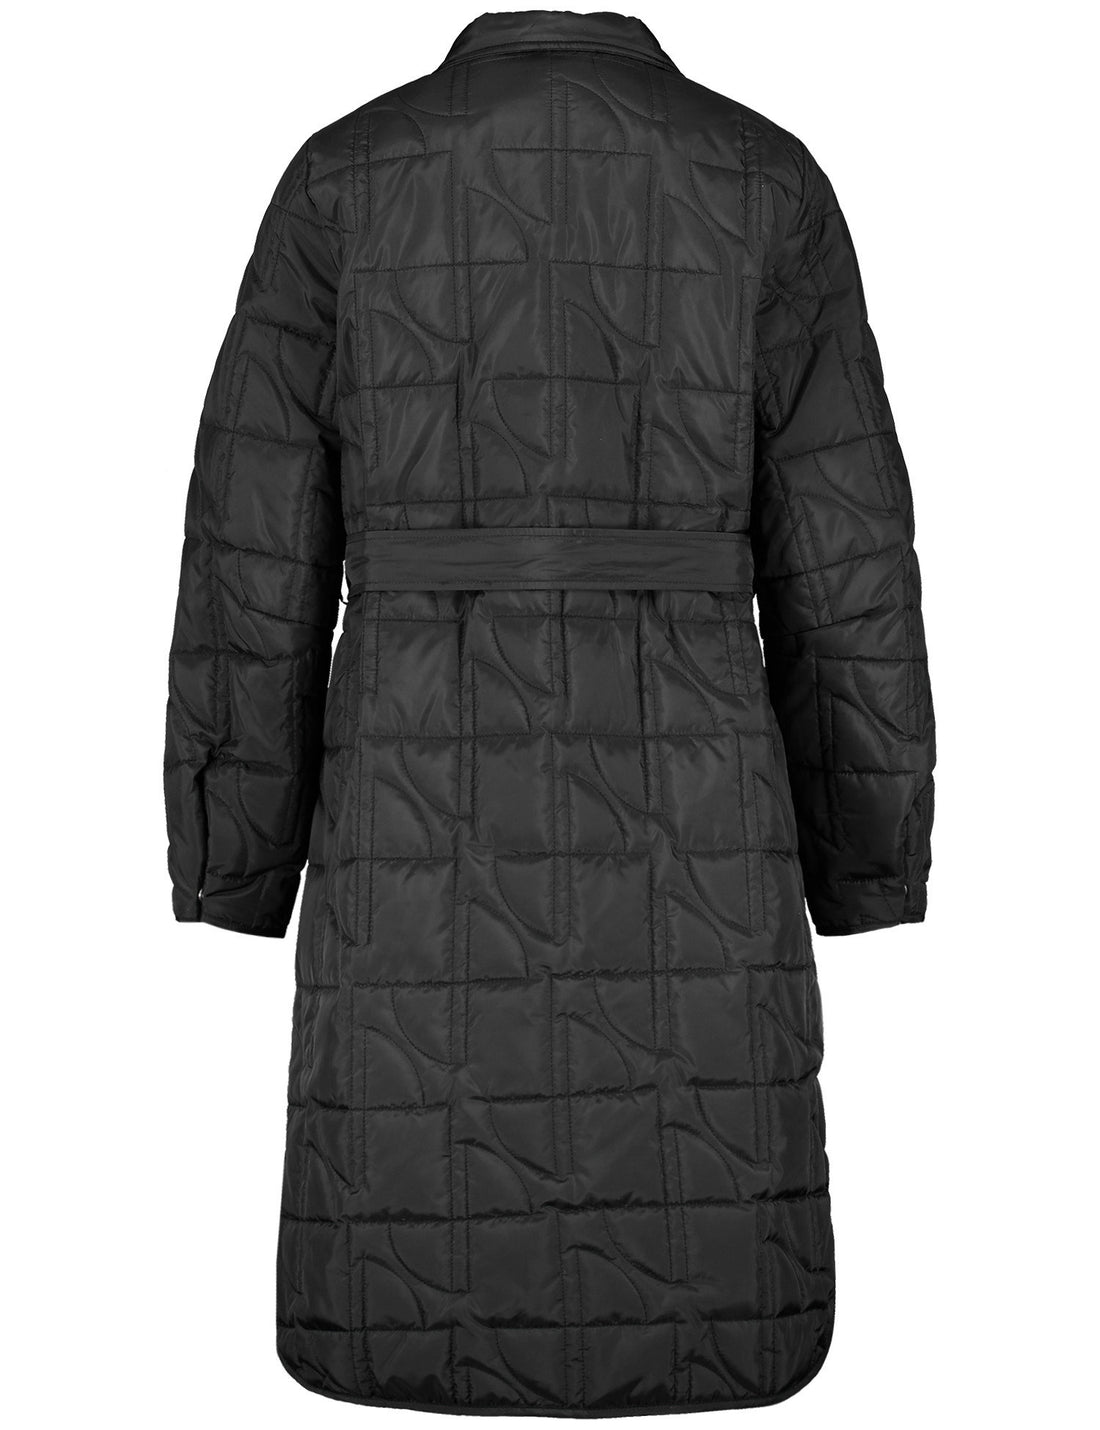 Black Coat With Rounded Hem Slits_450401-11701_1100_02